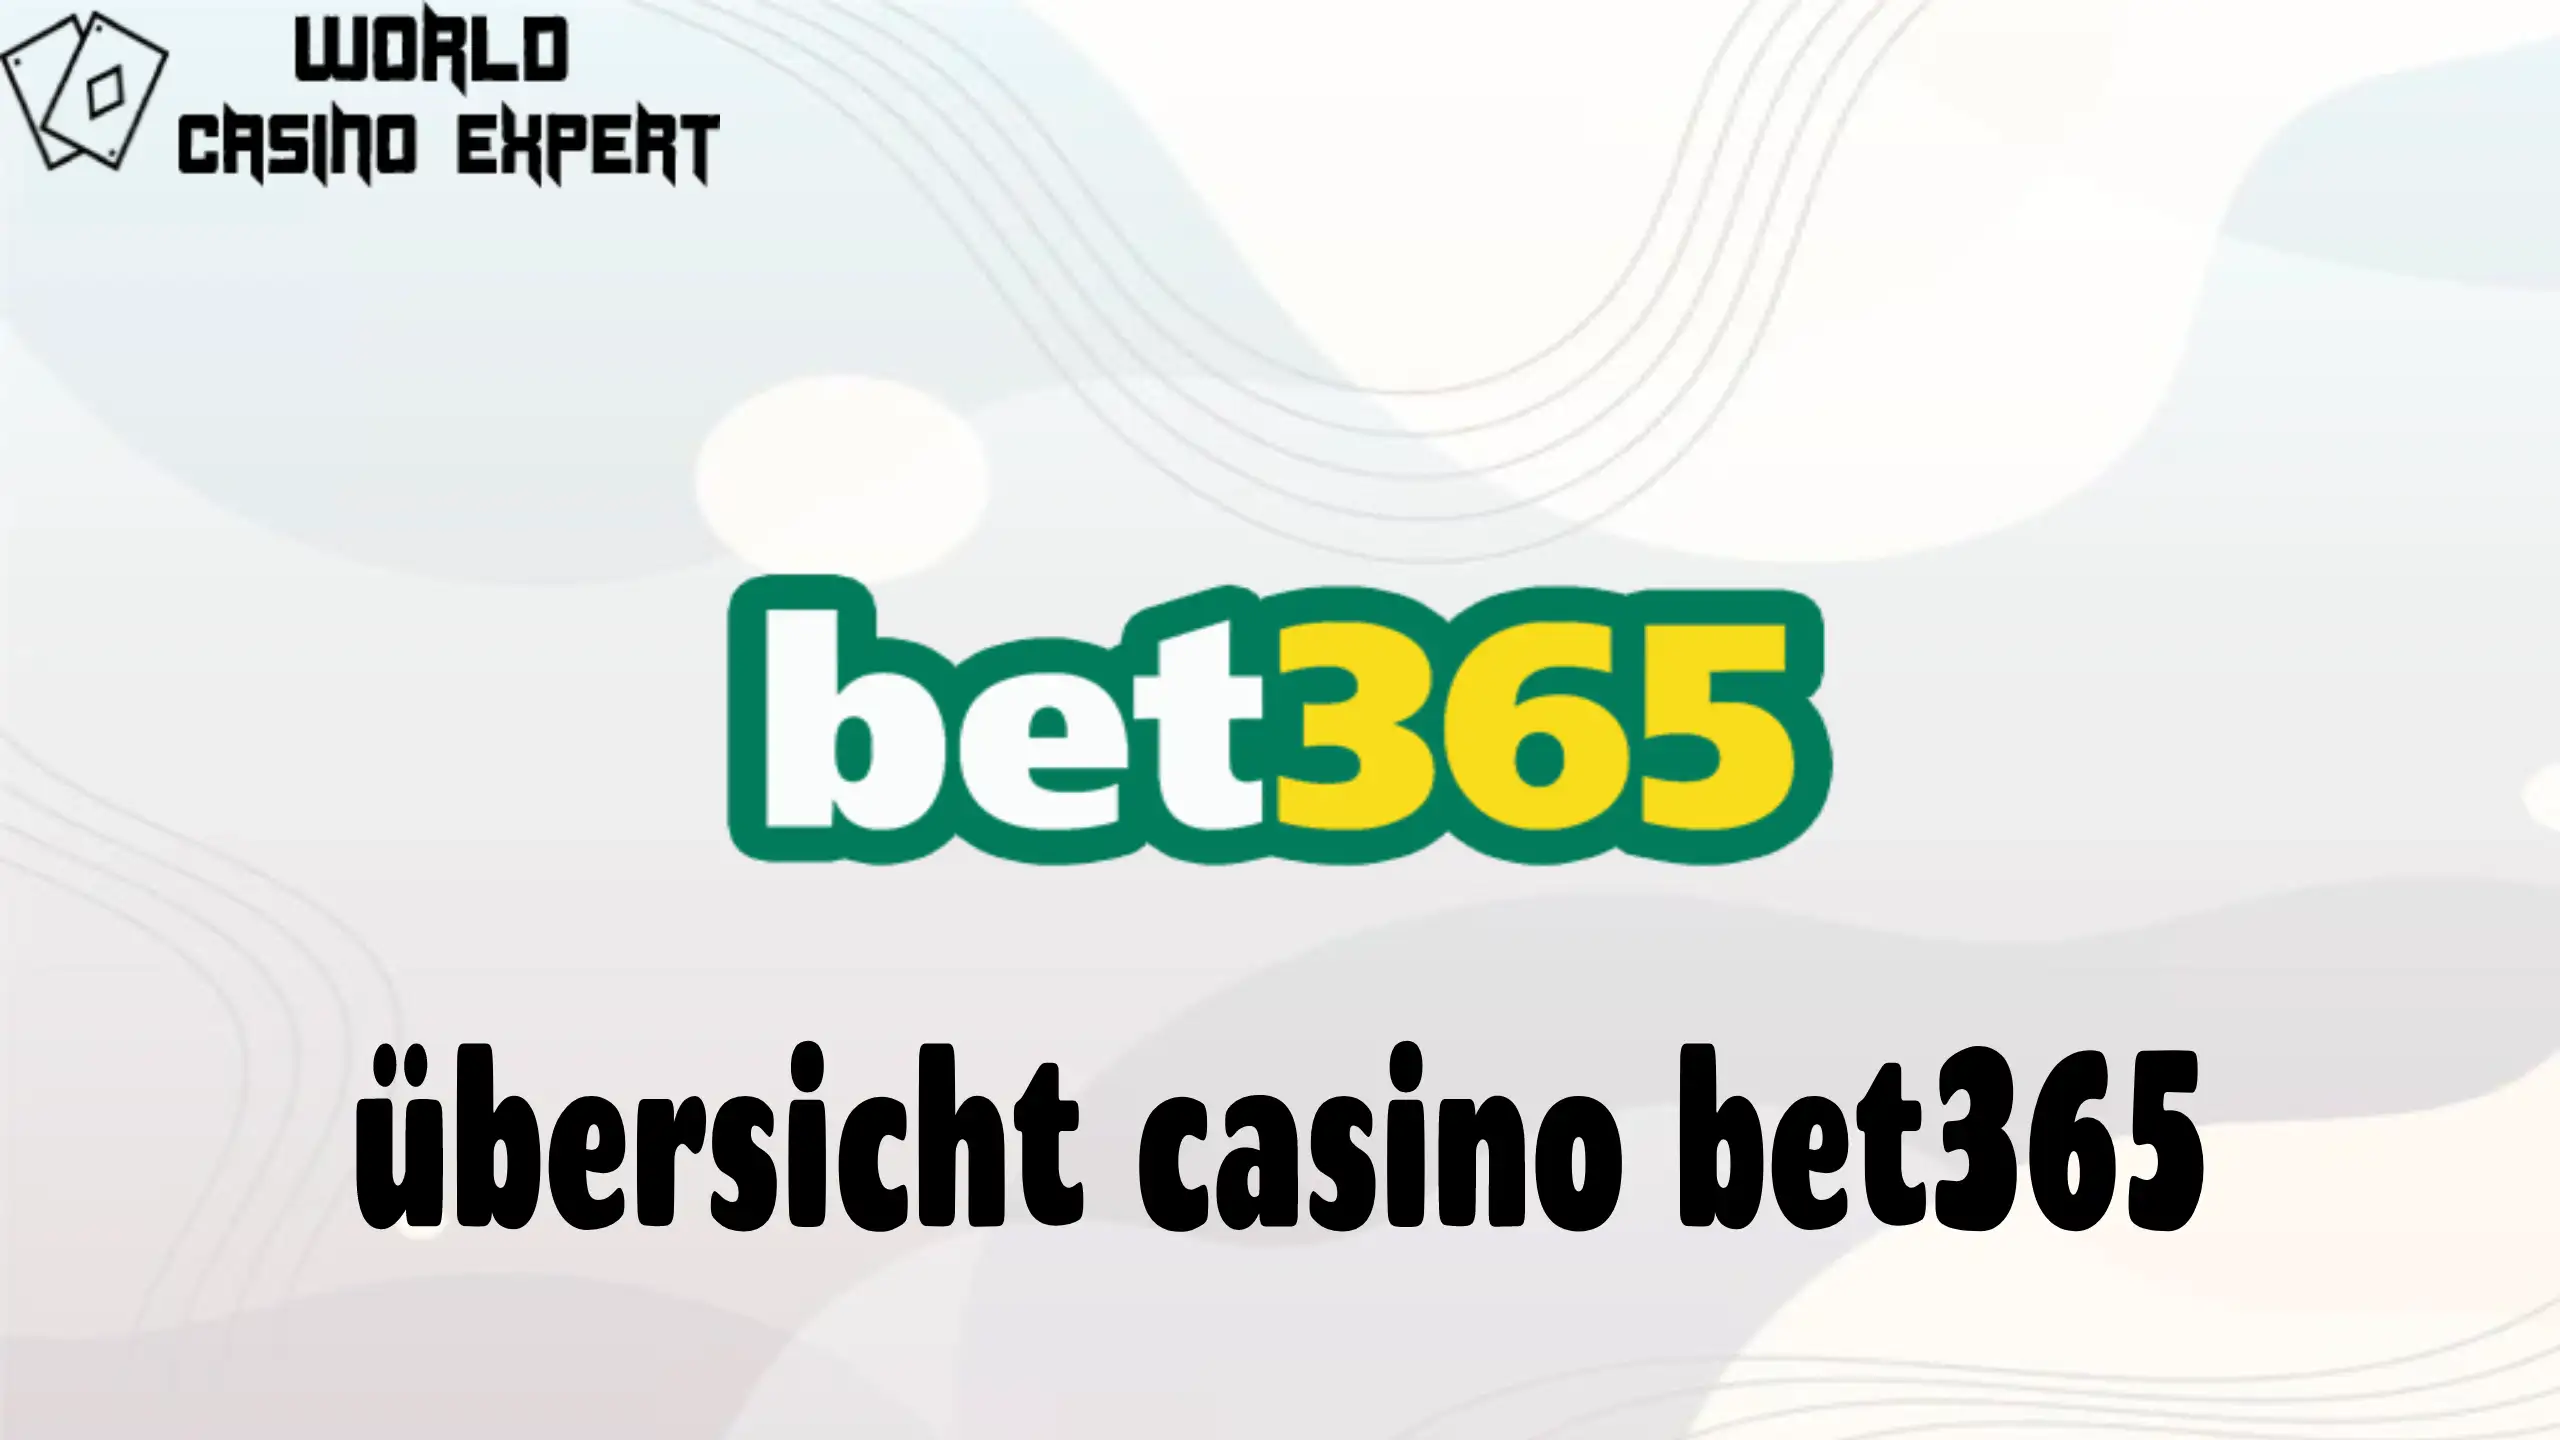 übersicht casino bet365 | World Casino Expert Germany